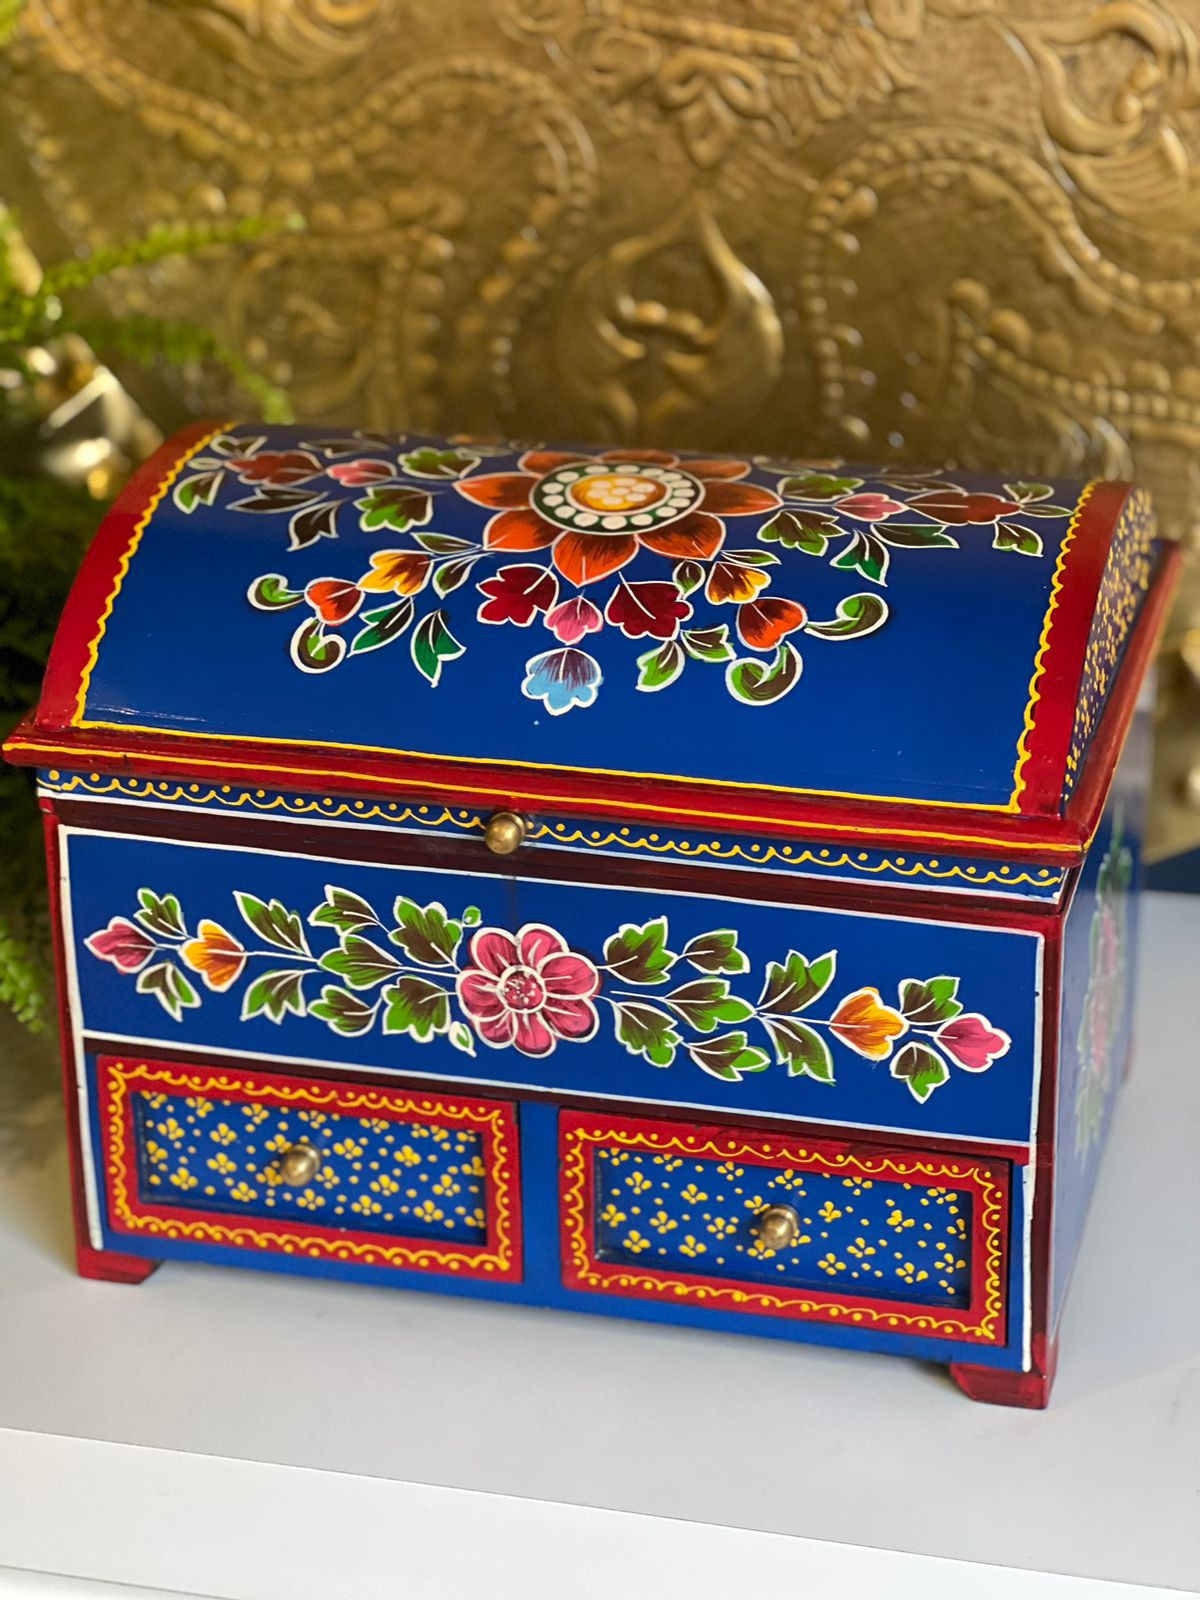 Baú - Porta Joias - Madeira - Pintado á Mão - Azul - Marrocos For You |  Decoração e Vestuário - Étnico